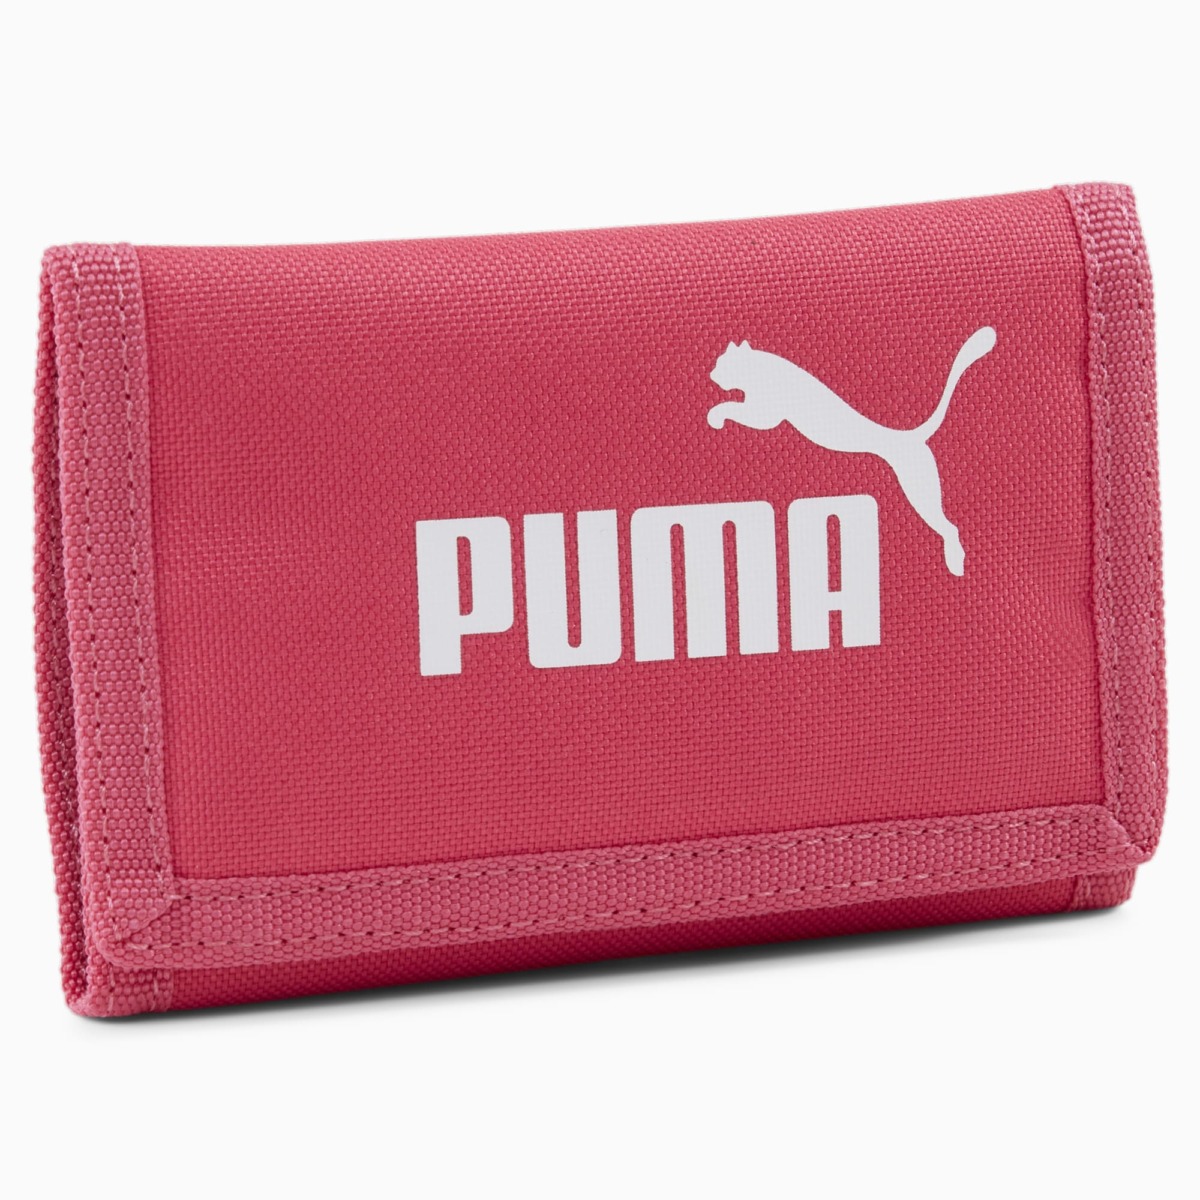 Puma - Wallet - Rose - Women GOOFASH